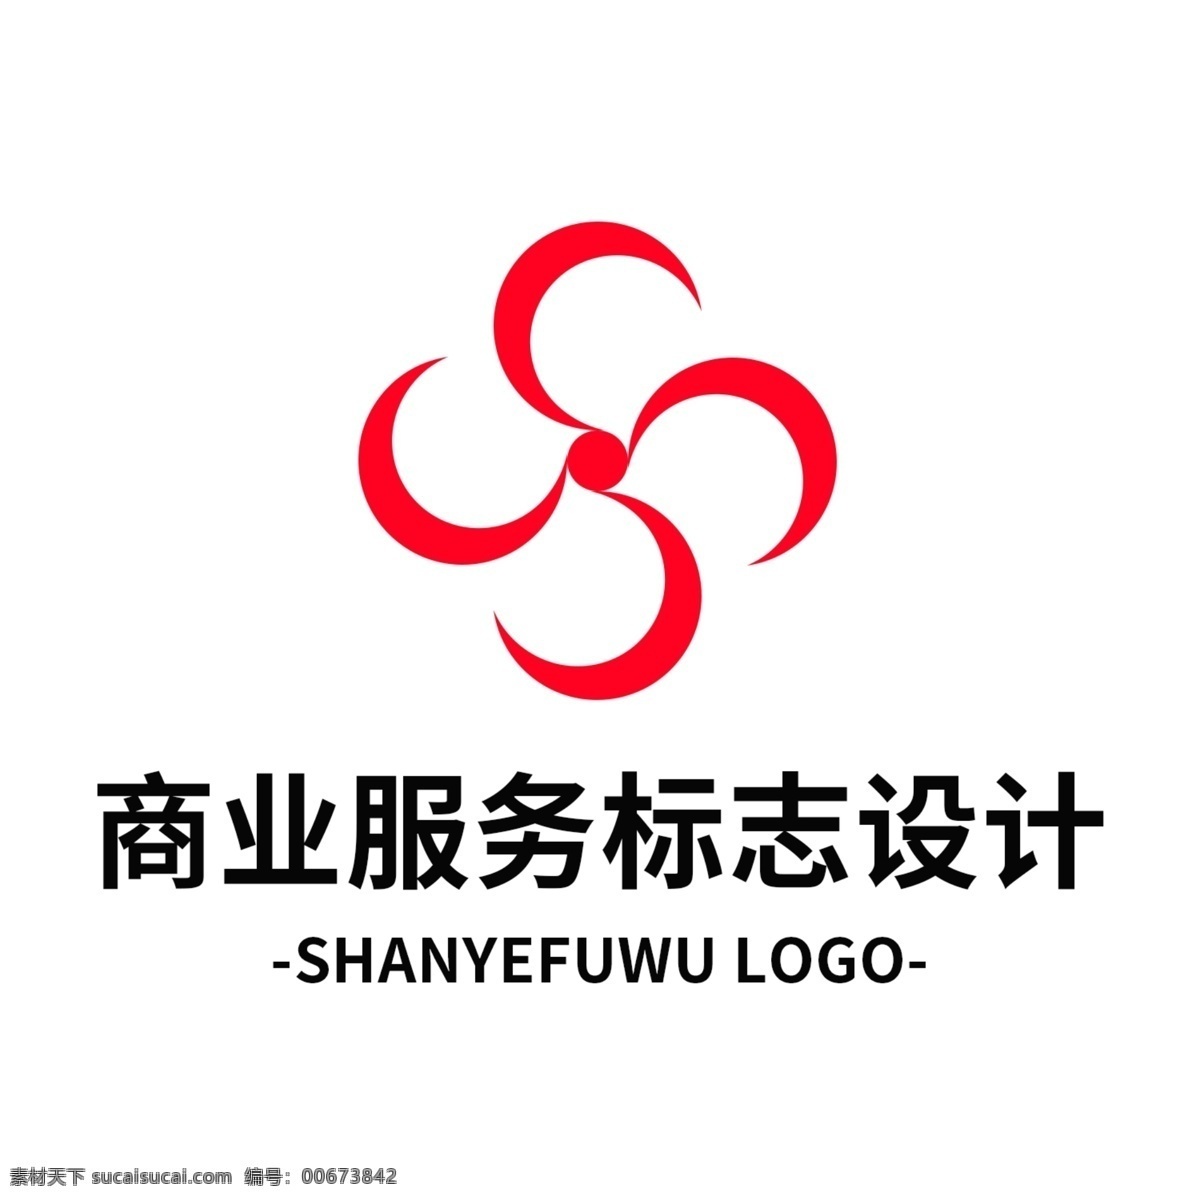 简约 大气 创意 商业服务 标志设计 logo 标识 行业标志 商业 服务